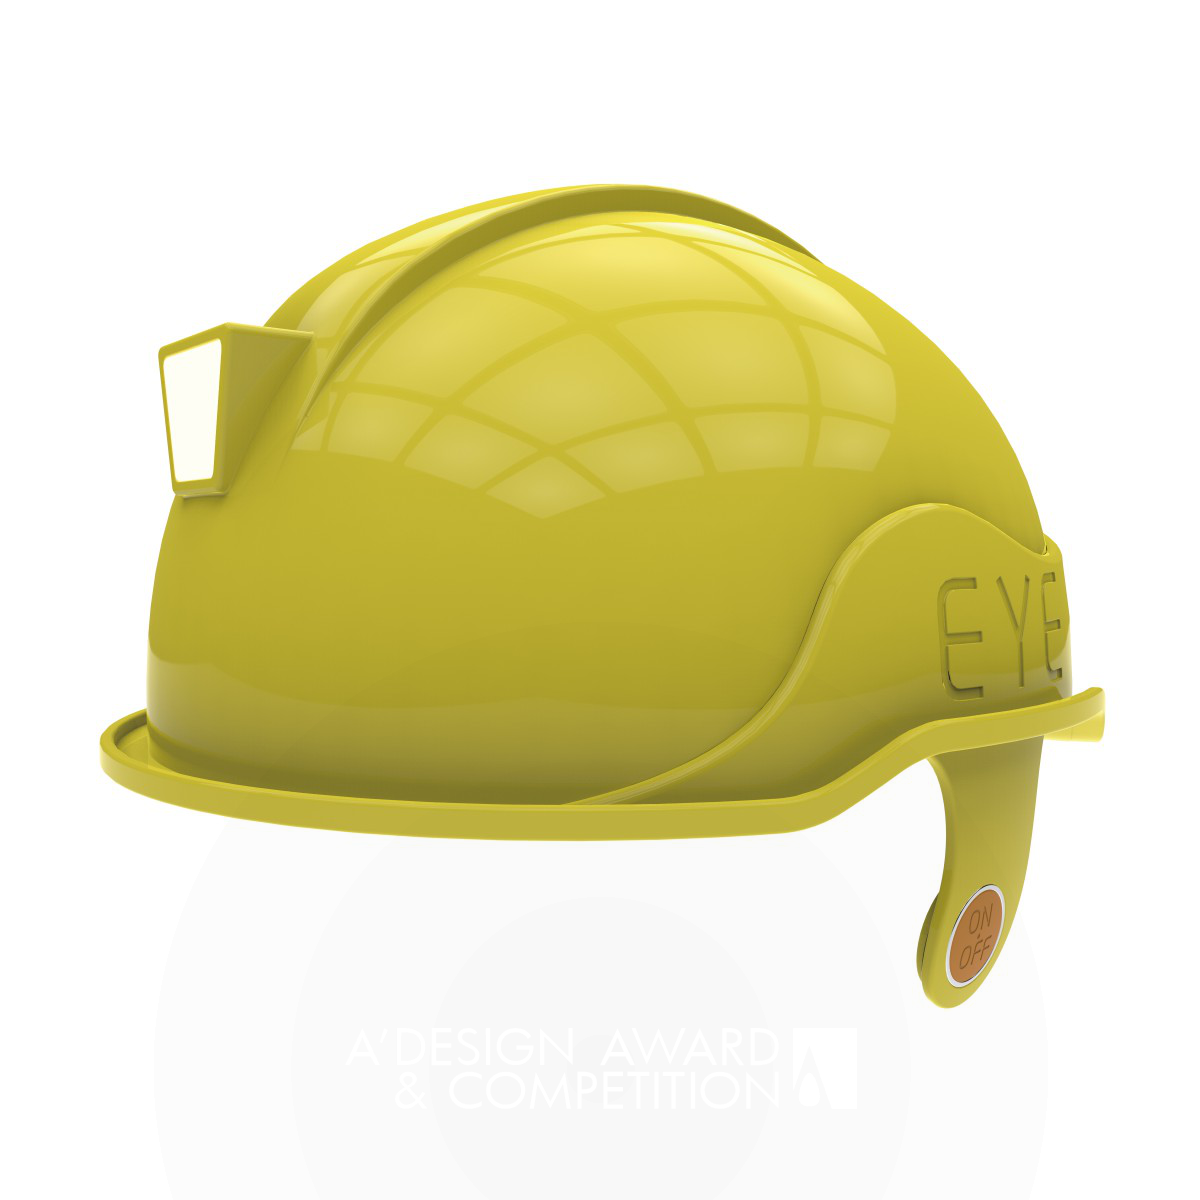 EYE Safety Helmet